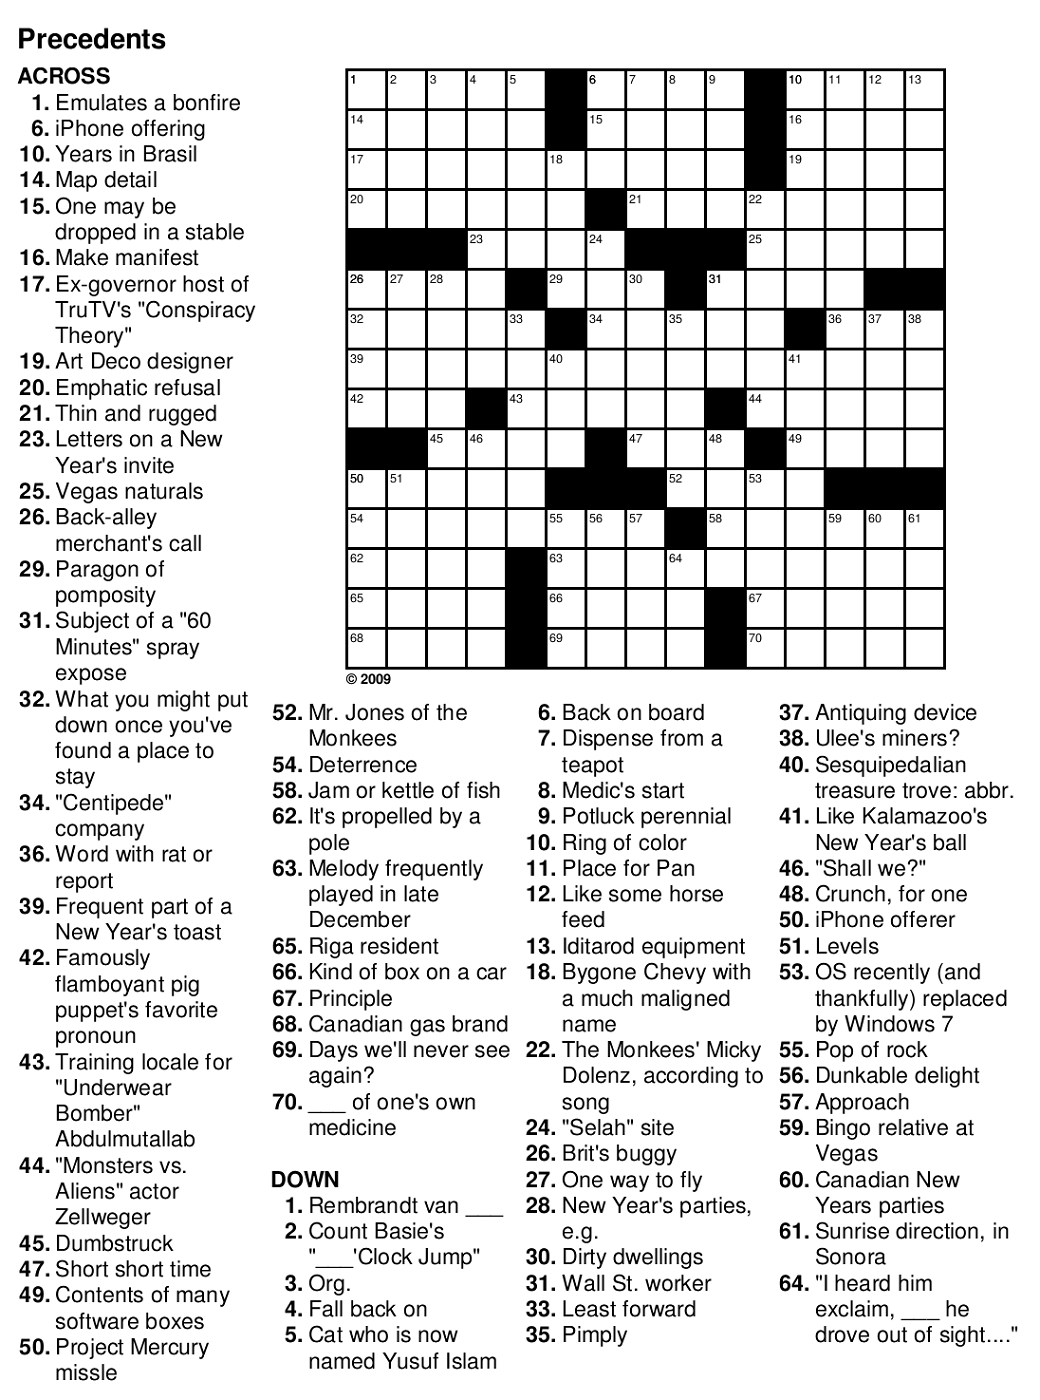 easy crosswords for seniors